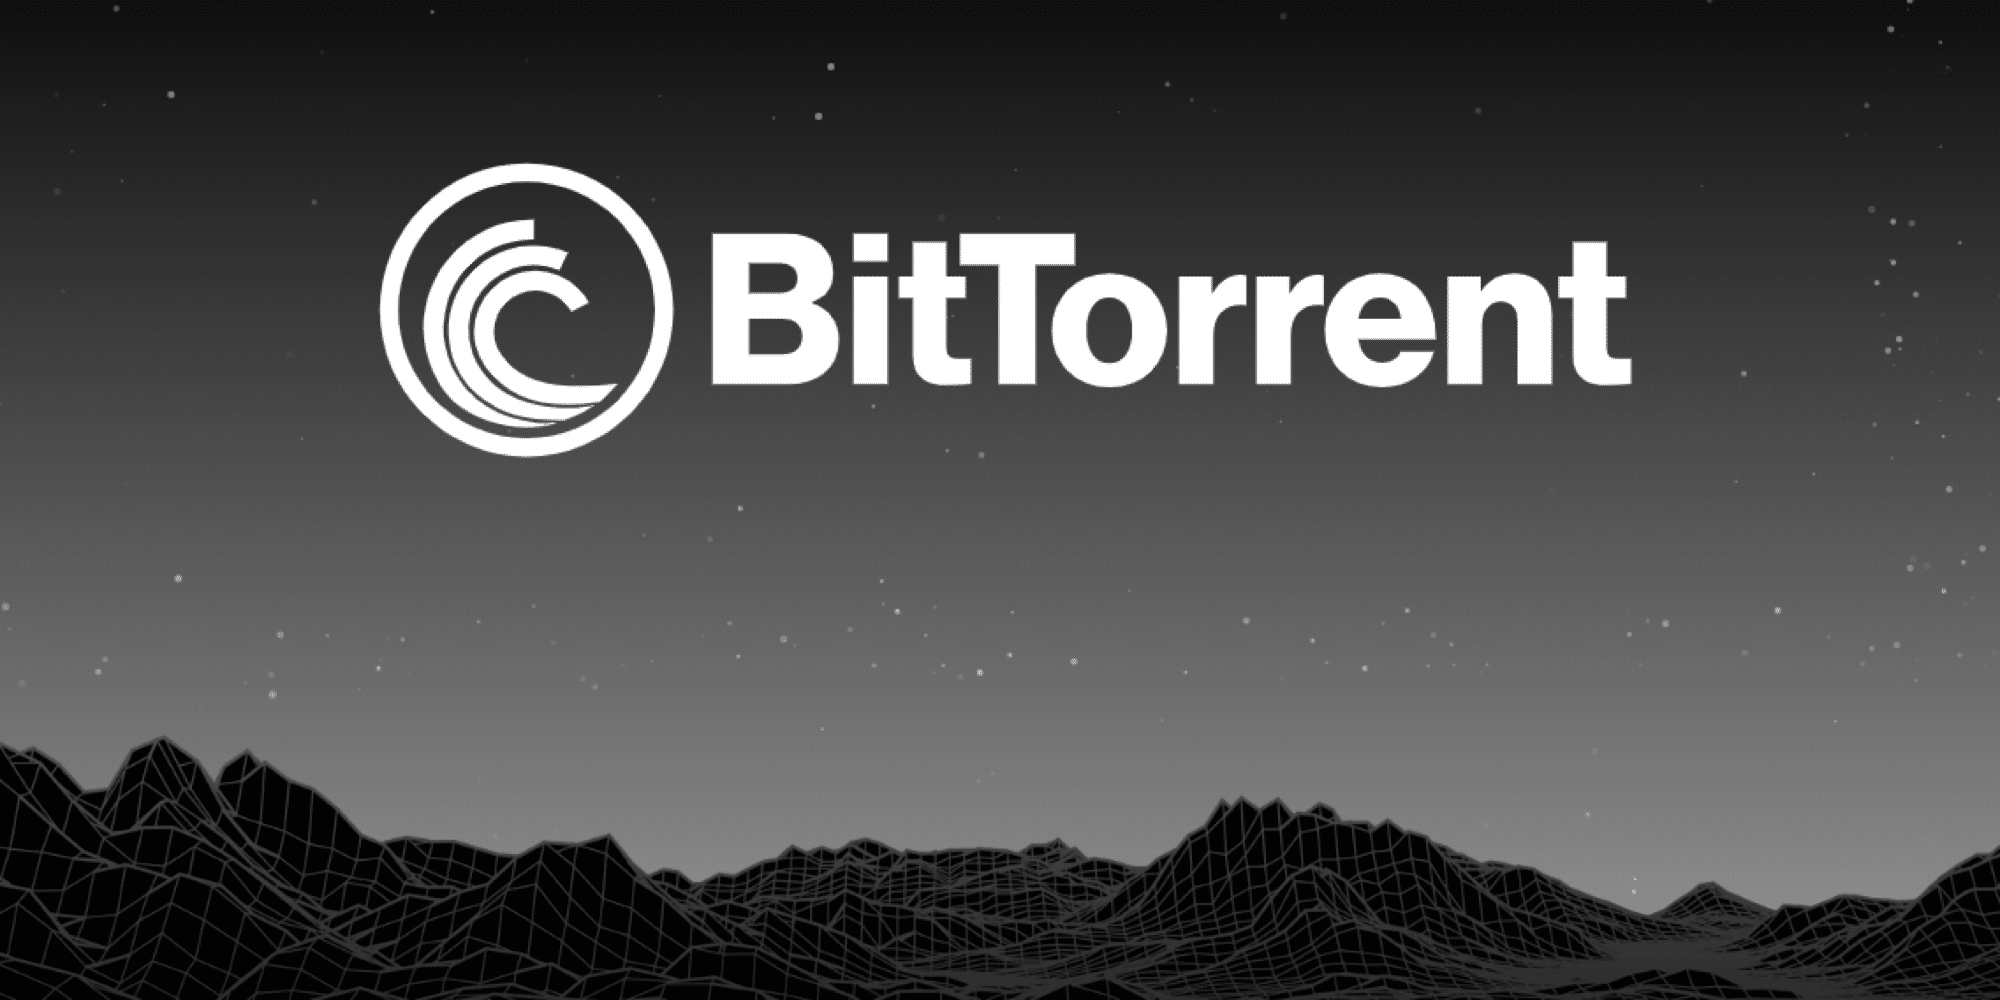 Addio Re BitTorrent: L’ascesa dei giganti dello streaming e del cloud